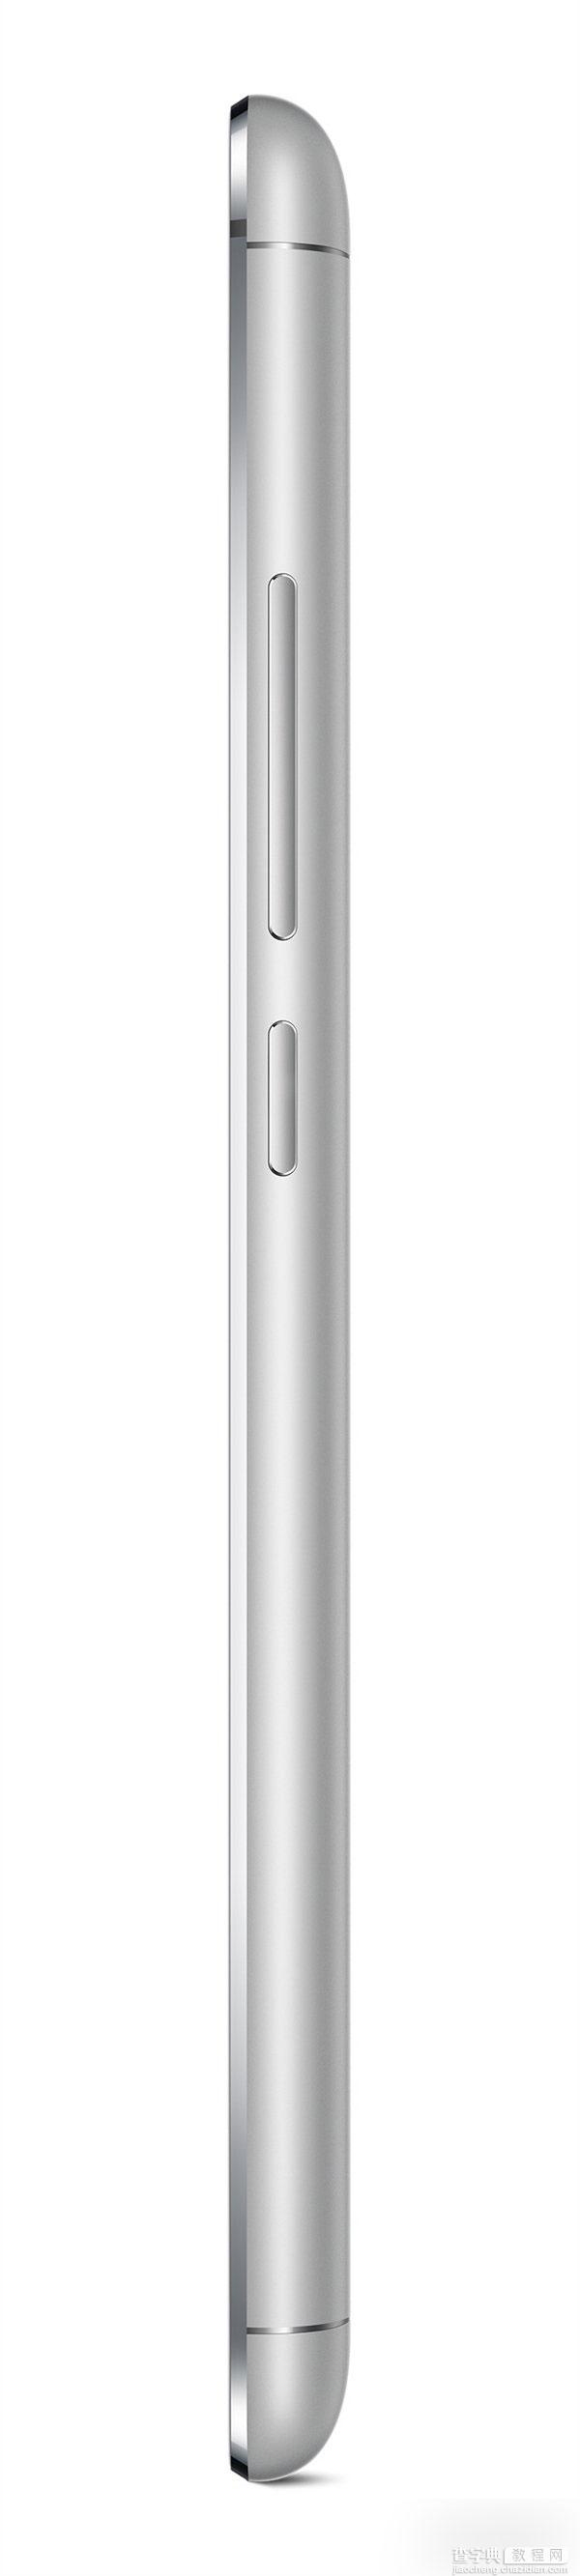 魅族MX5手机的官方高清图赏 全金属机身44